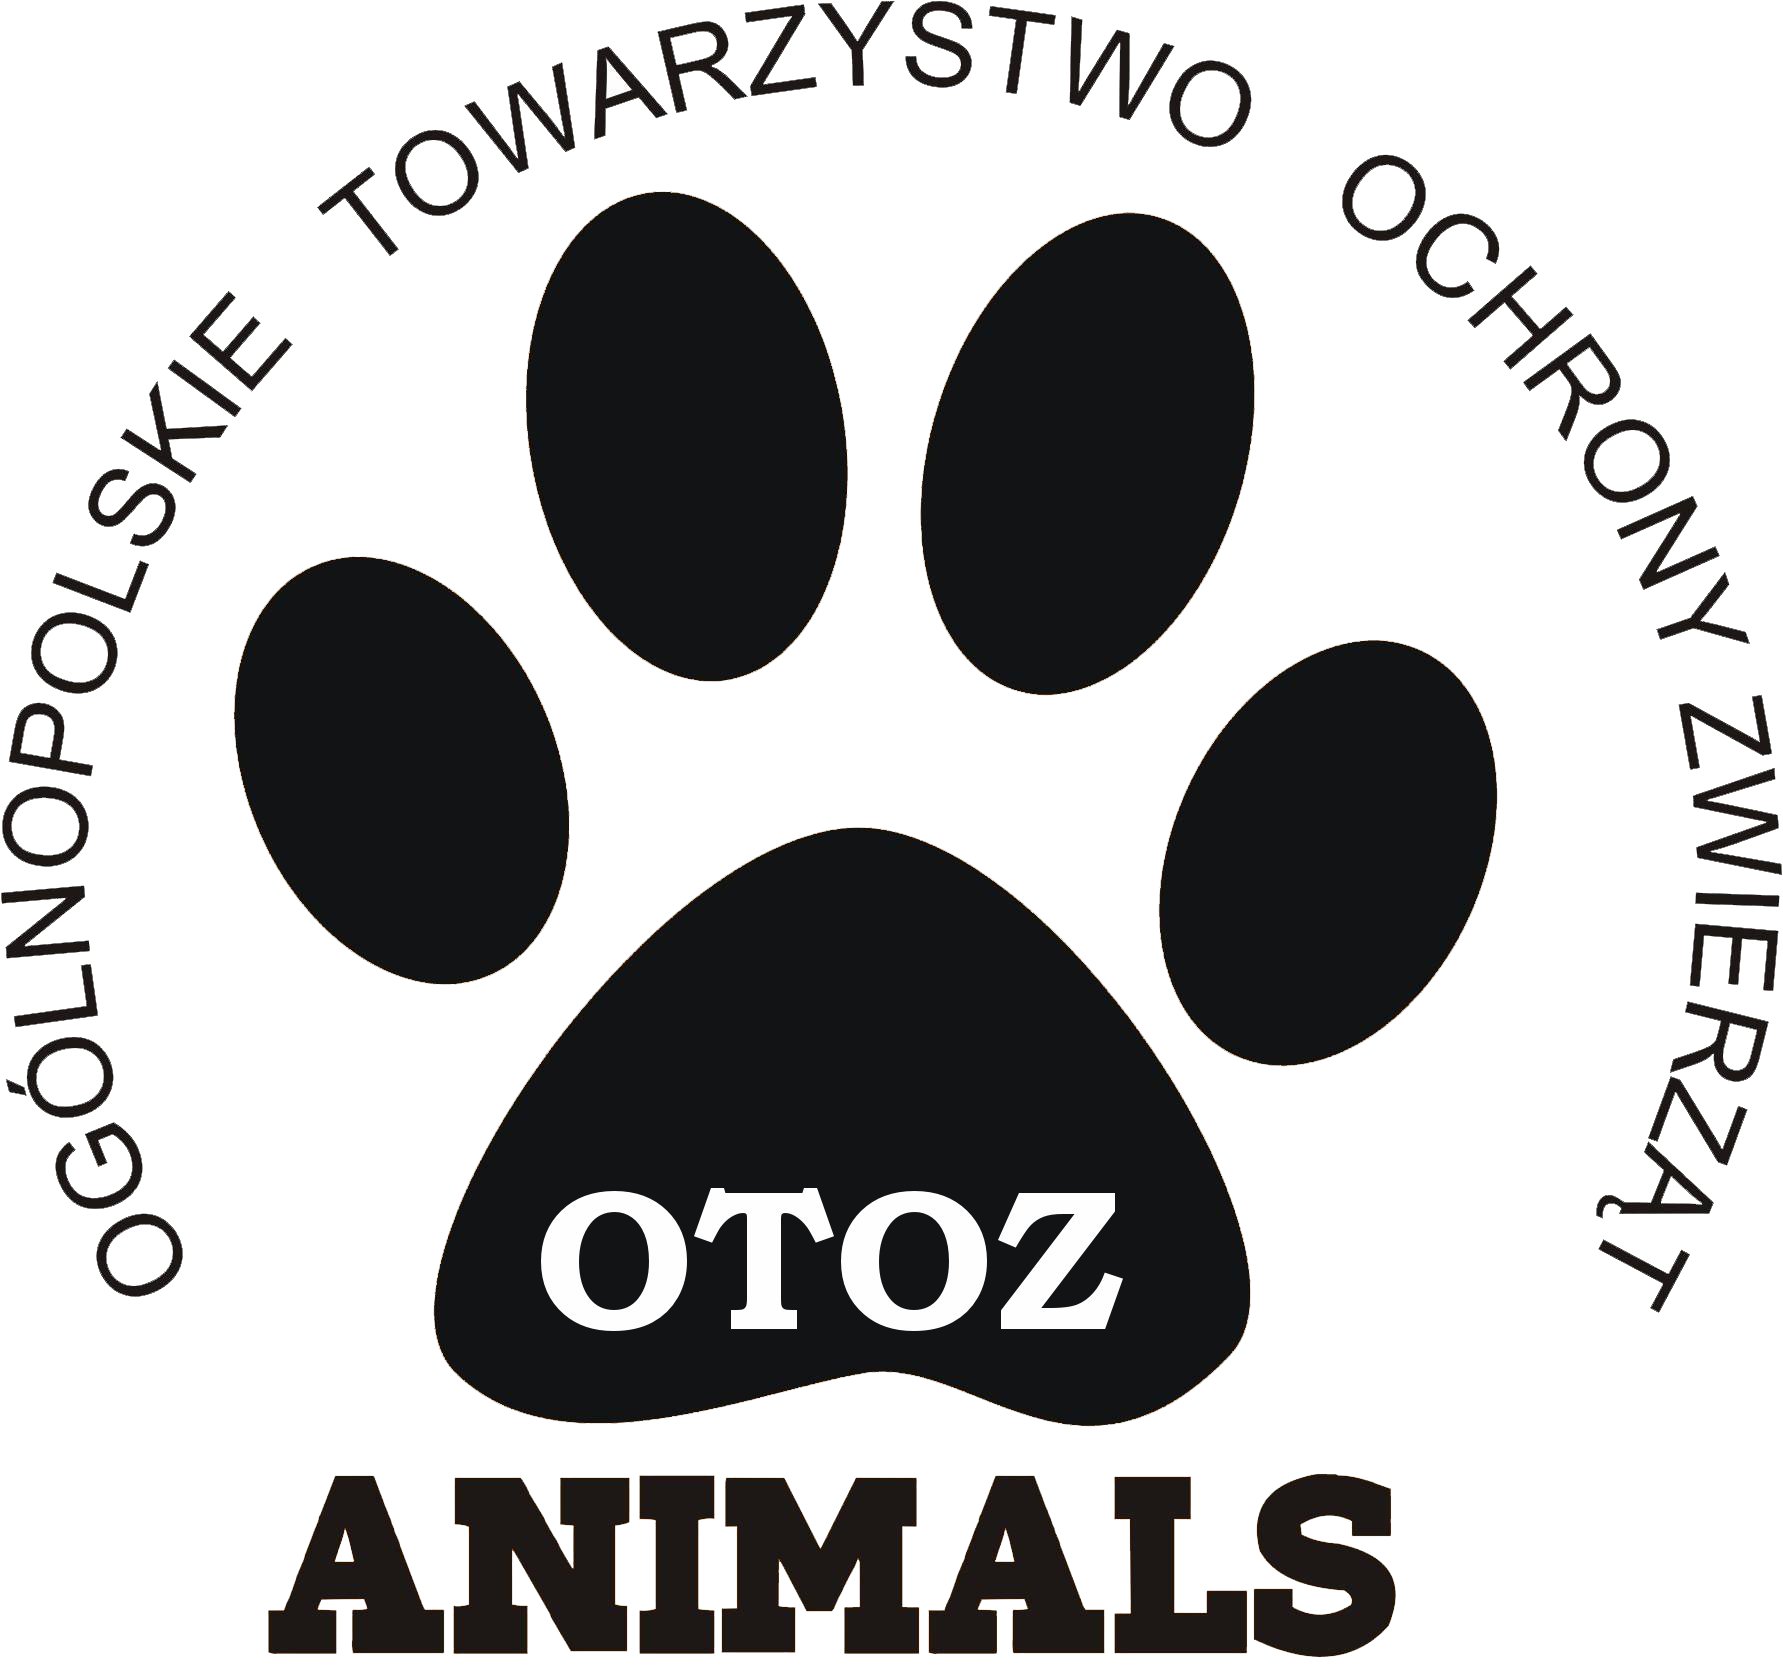 OTOZ Animals Krosno